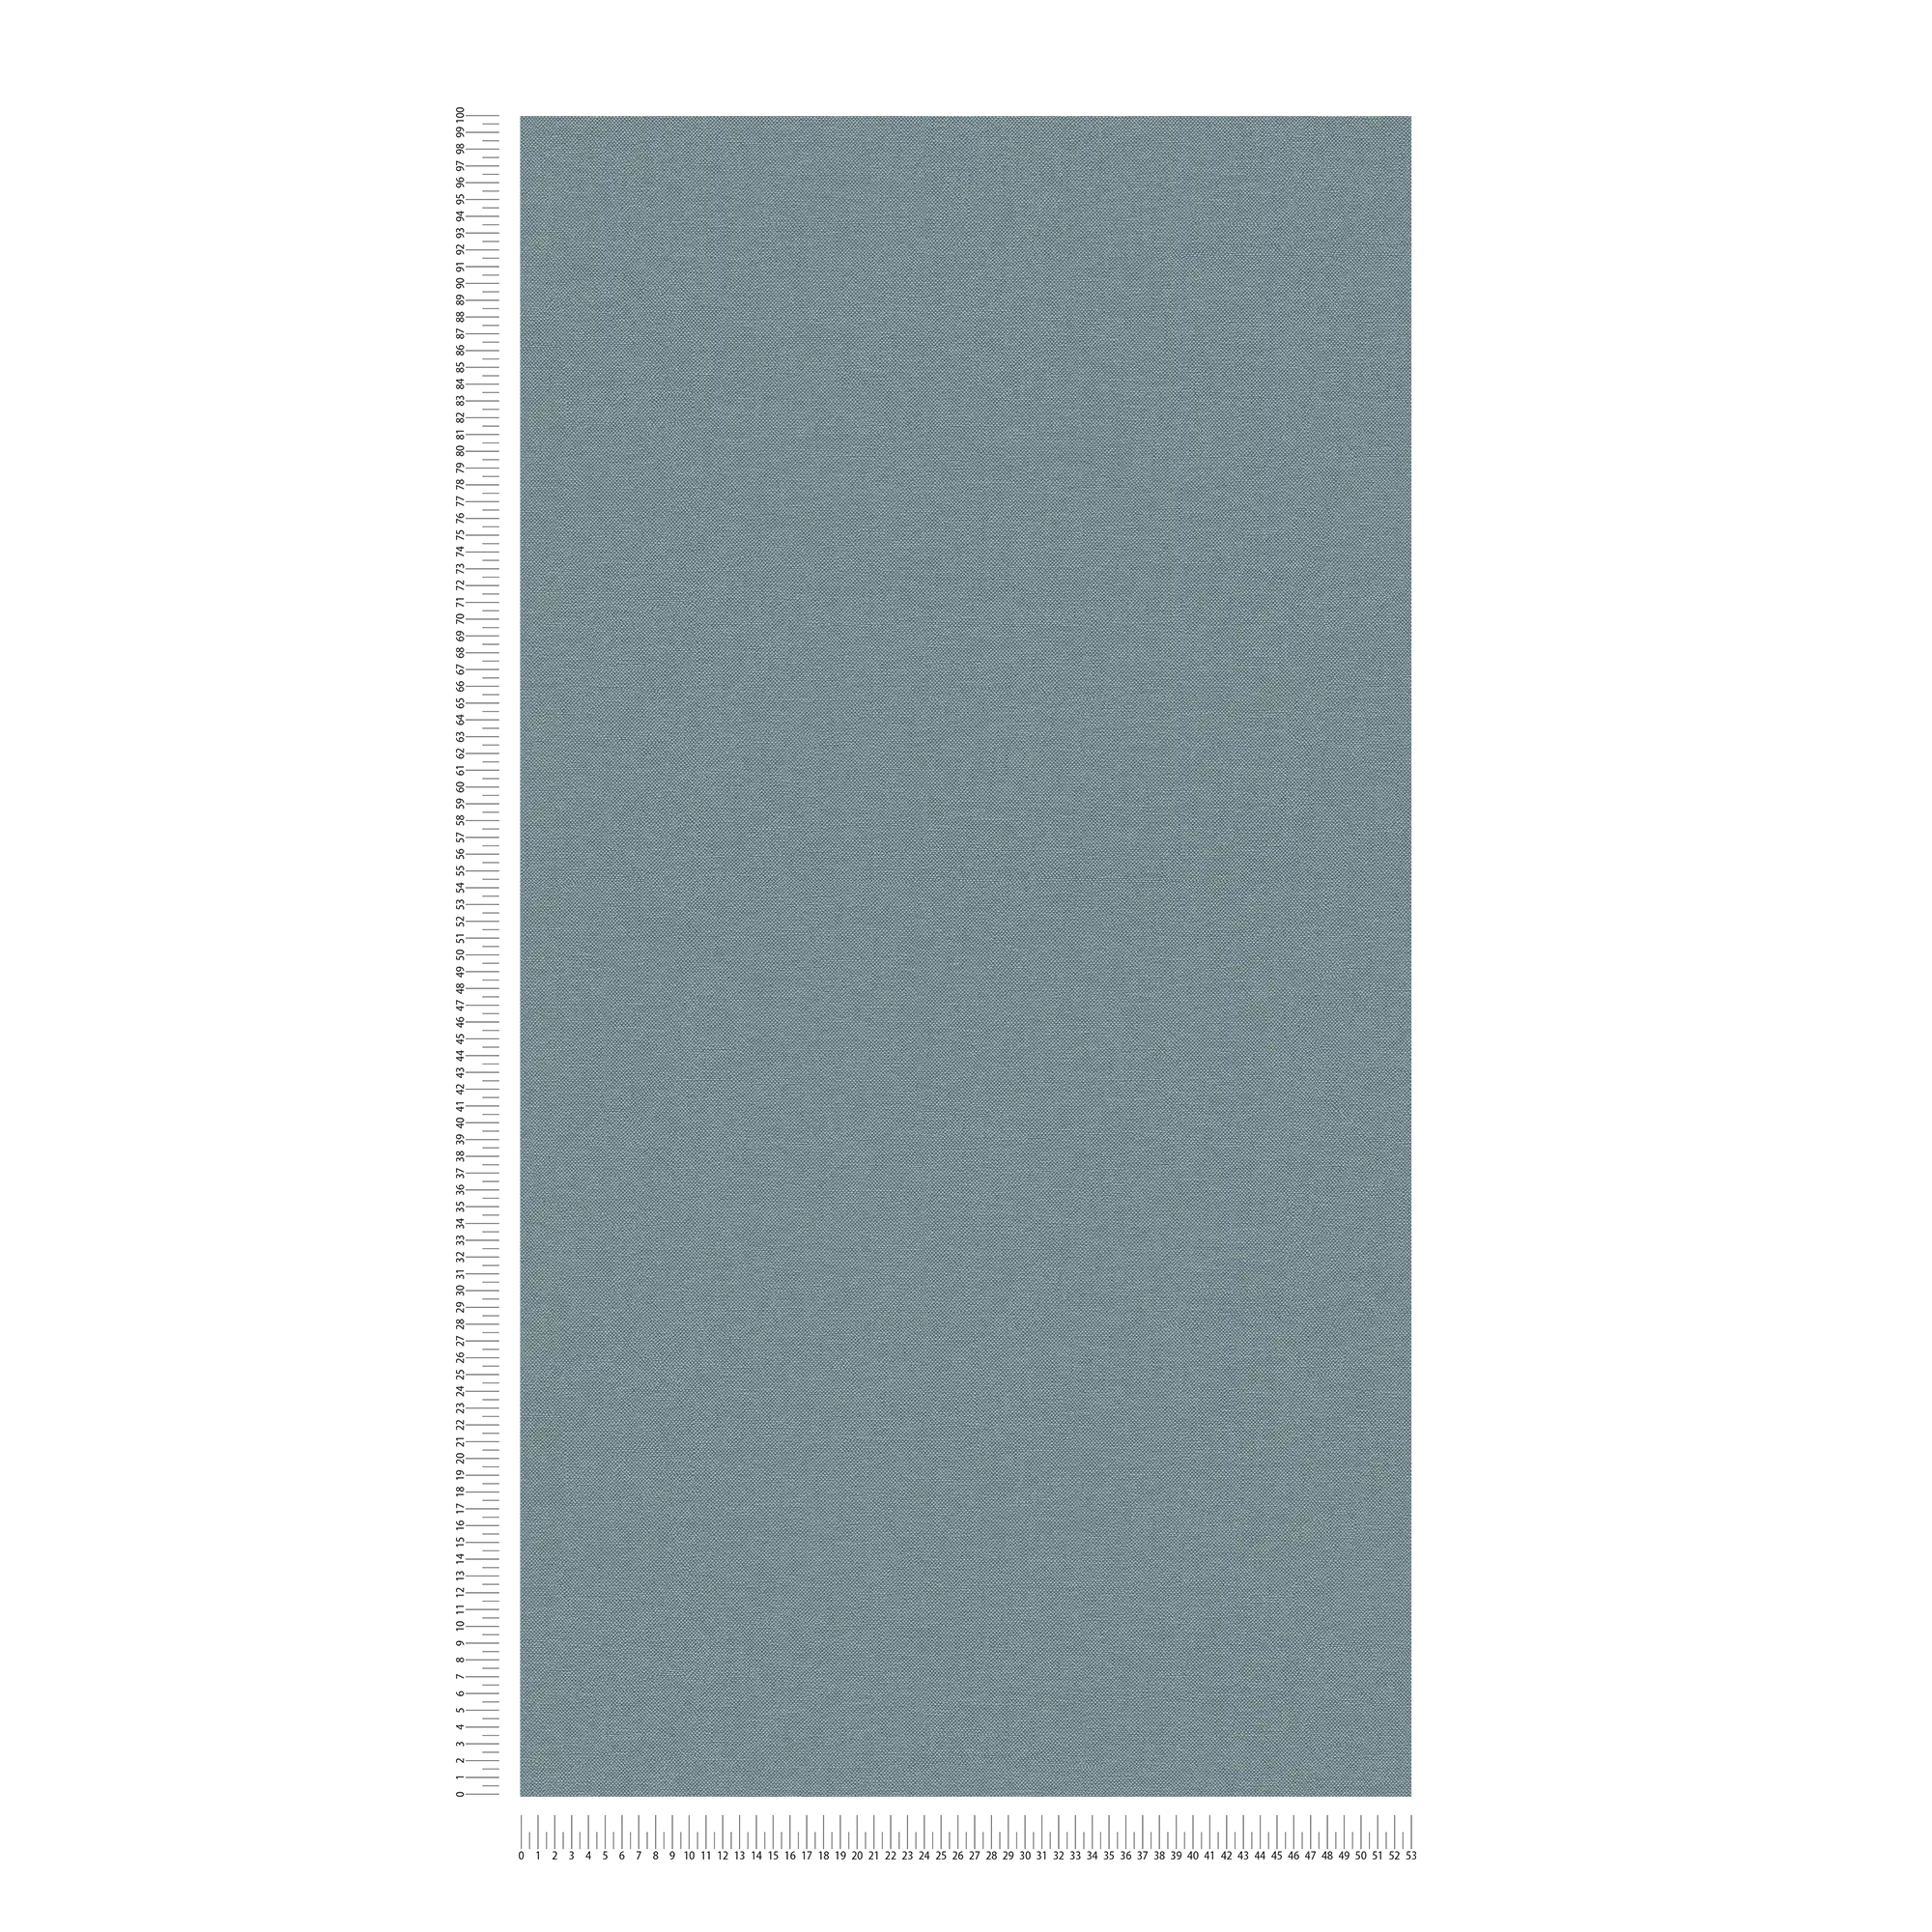             Einfarbige Tapete mit Gewebe-Struktur matt – Blau
        